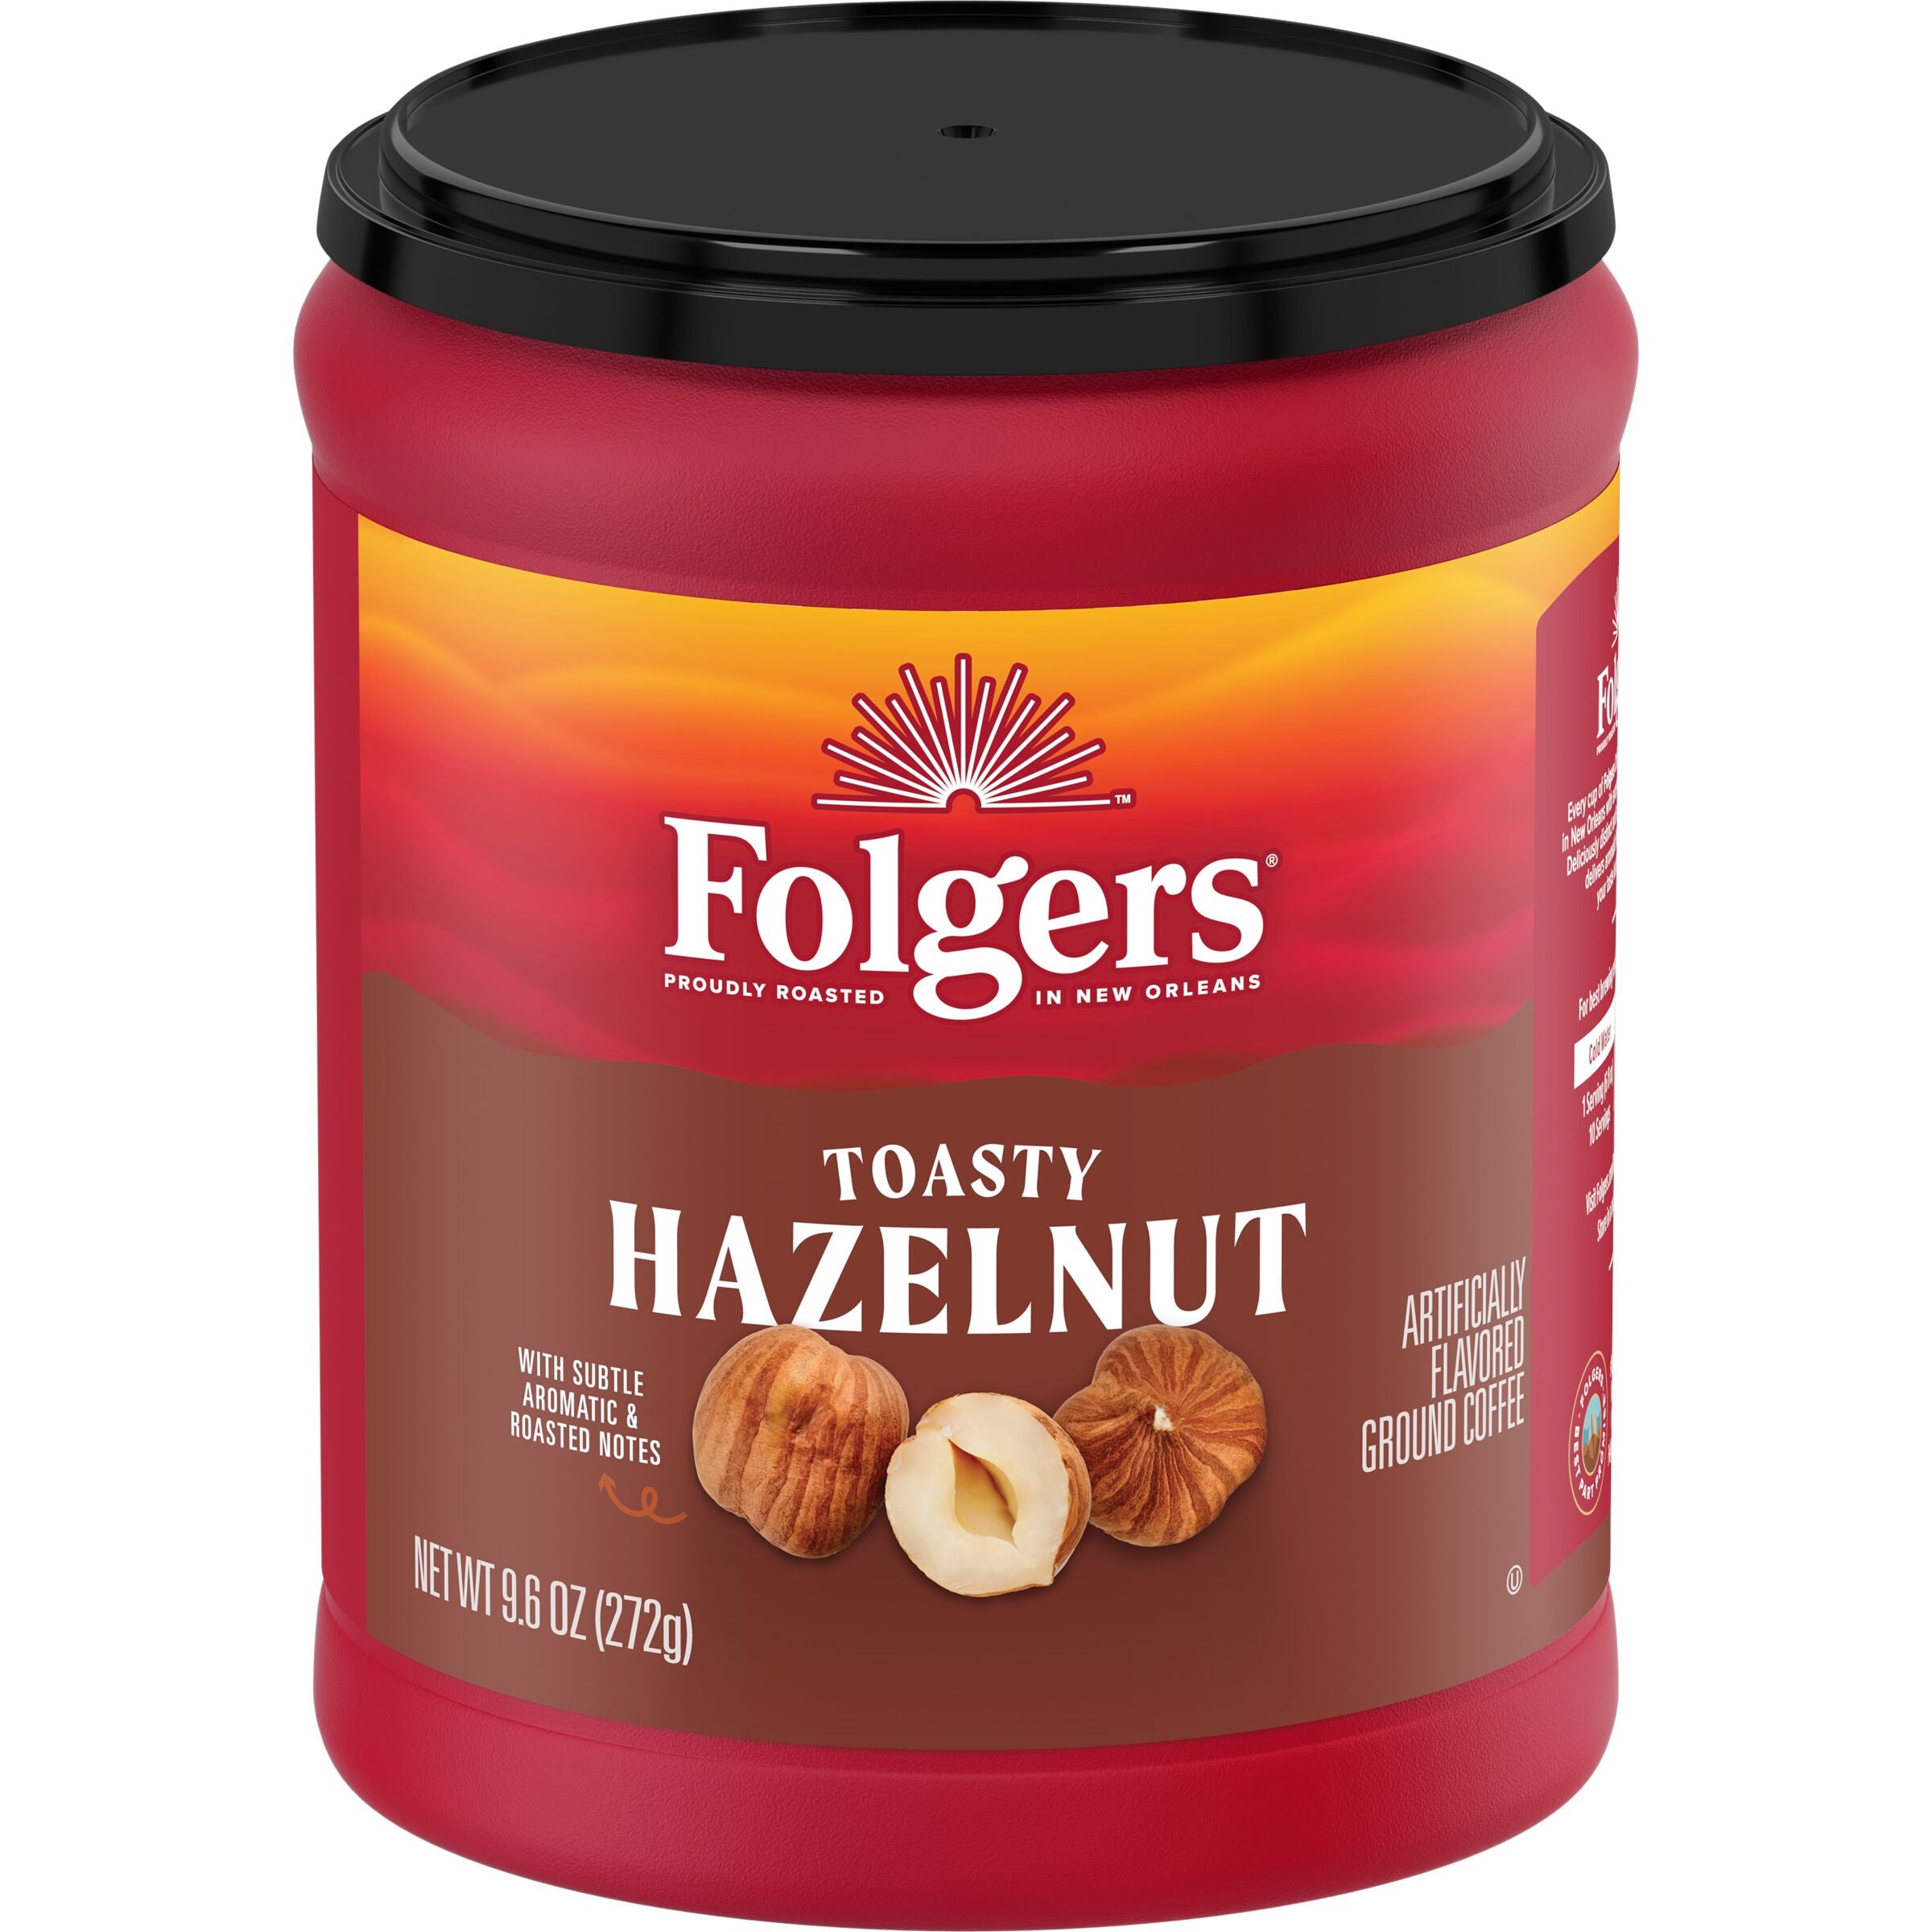 Folgers Toasty Hazelnut Flavored Ground Coffee, 9.6 oz